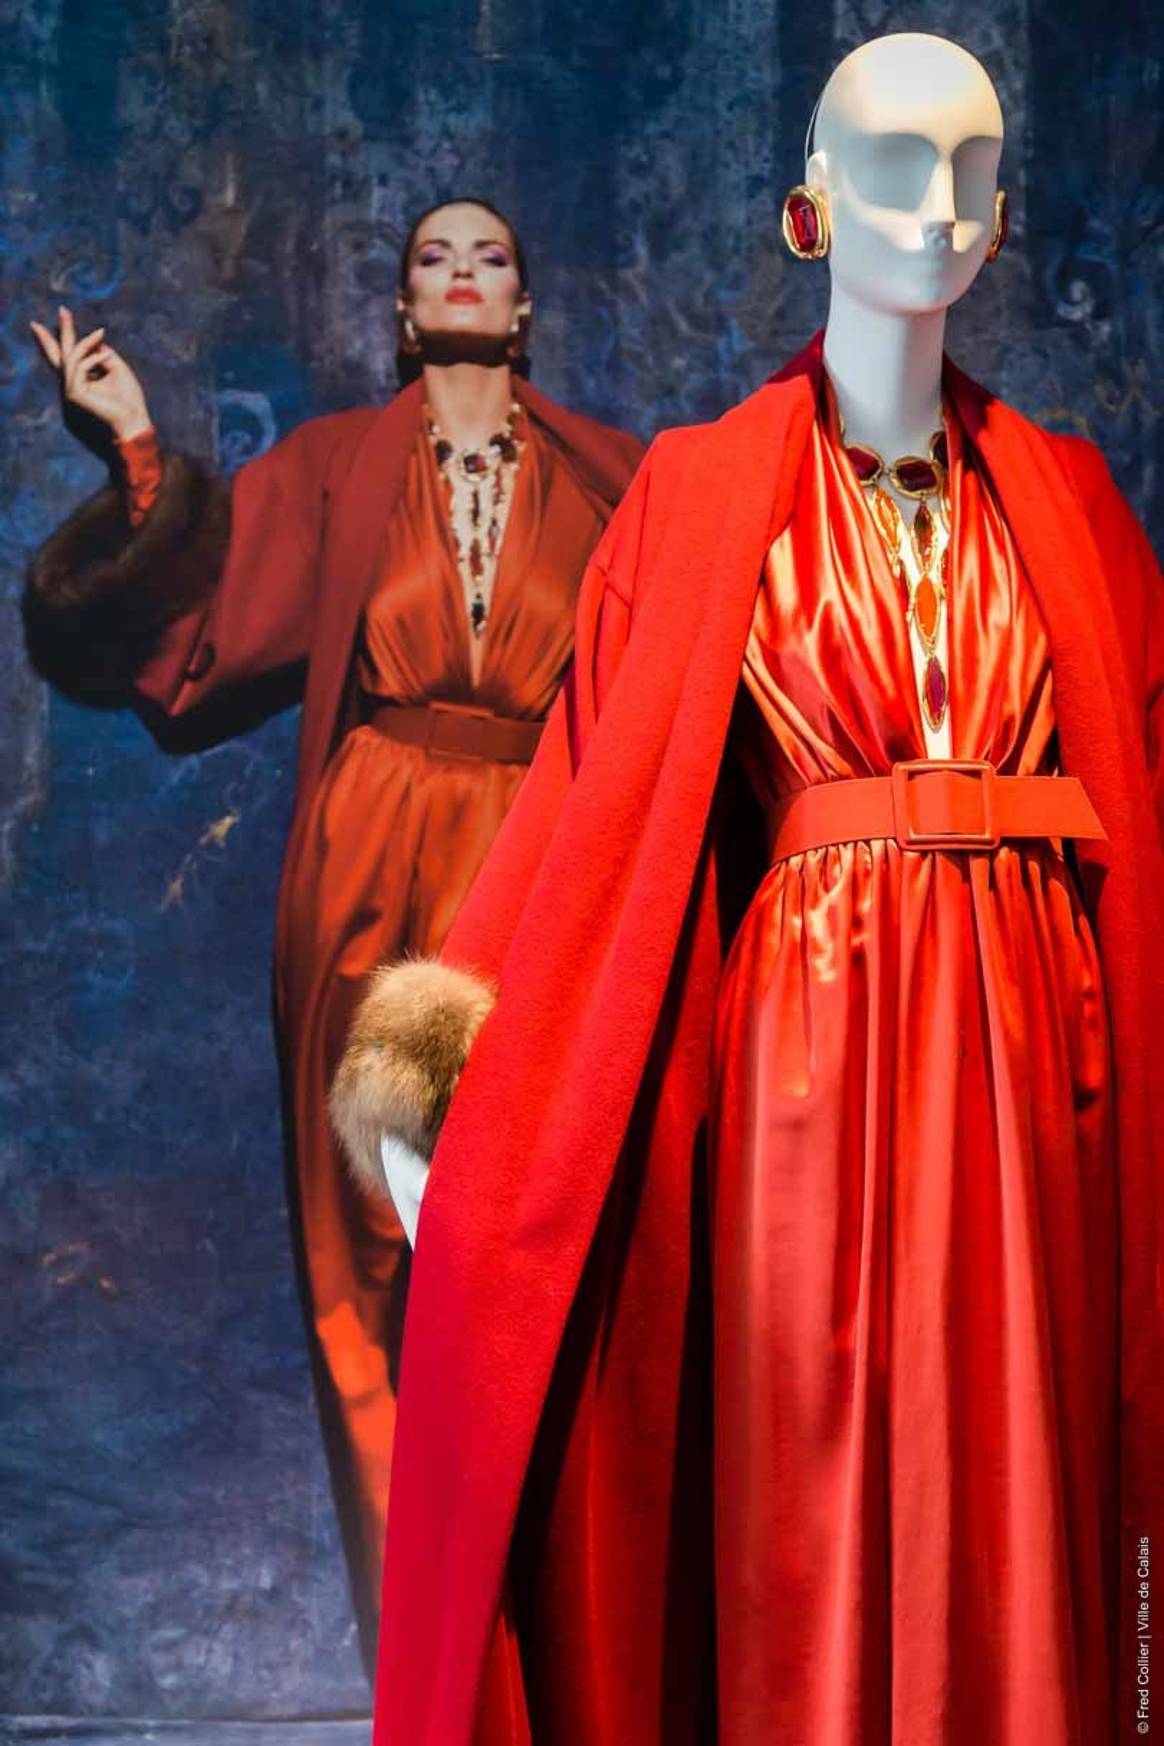 In Beeld: Hubert de Givenchy’s gelijknamige tentoonstelling